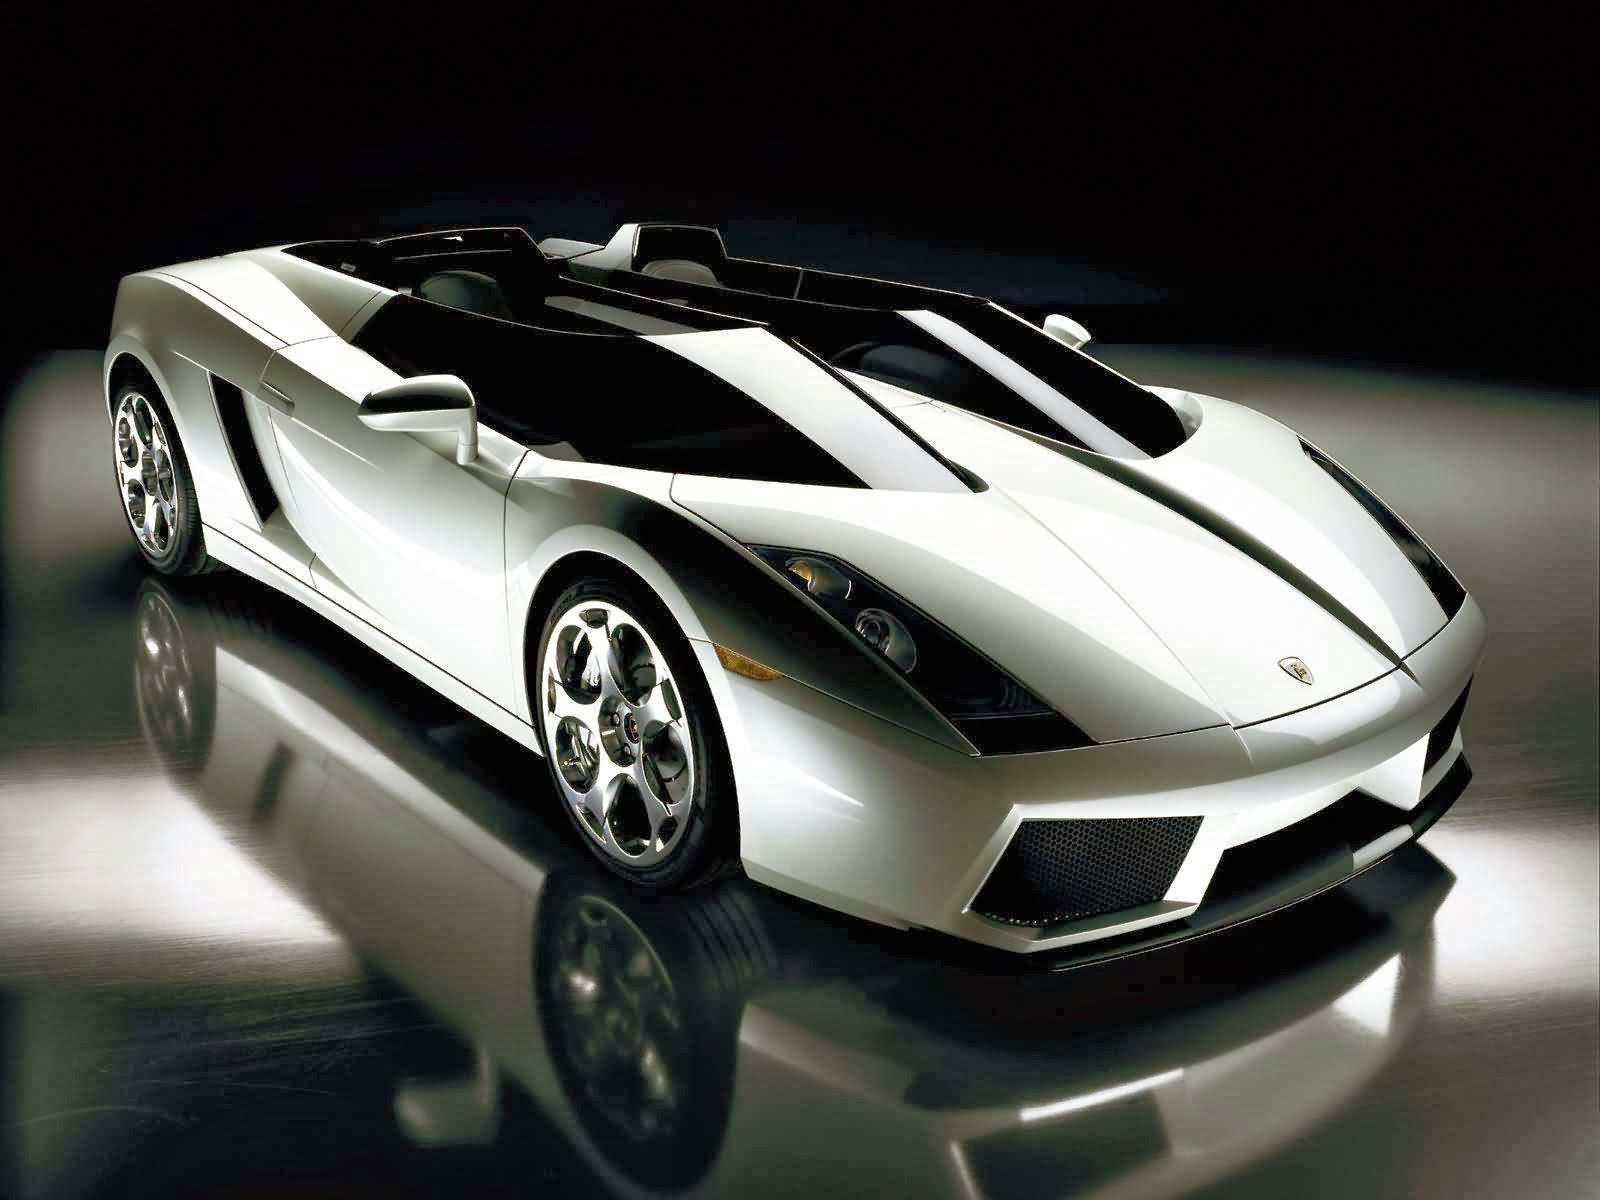  Foto  Mobil  Lamborghini  Super Keren  Terbaru 2014 HD 